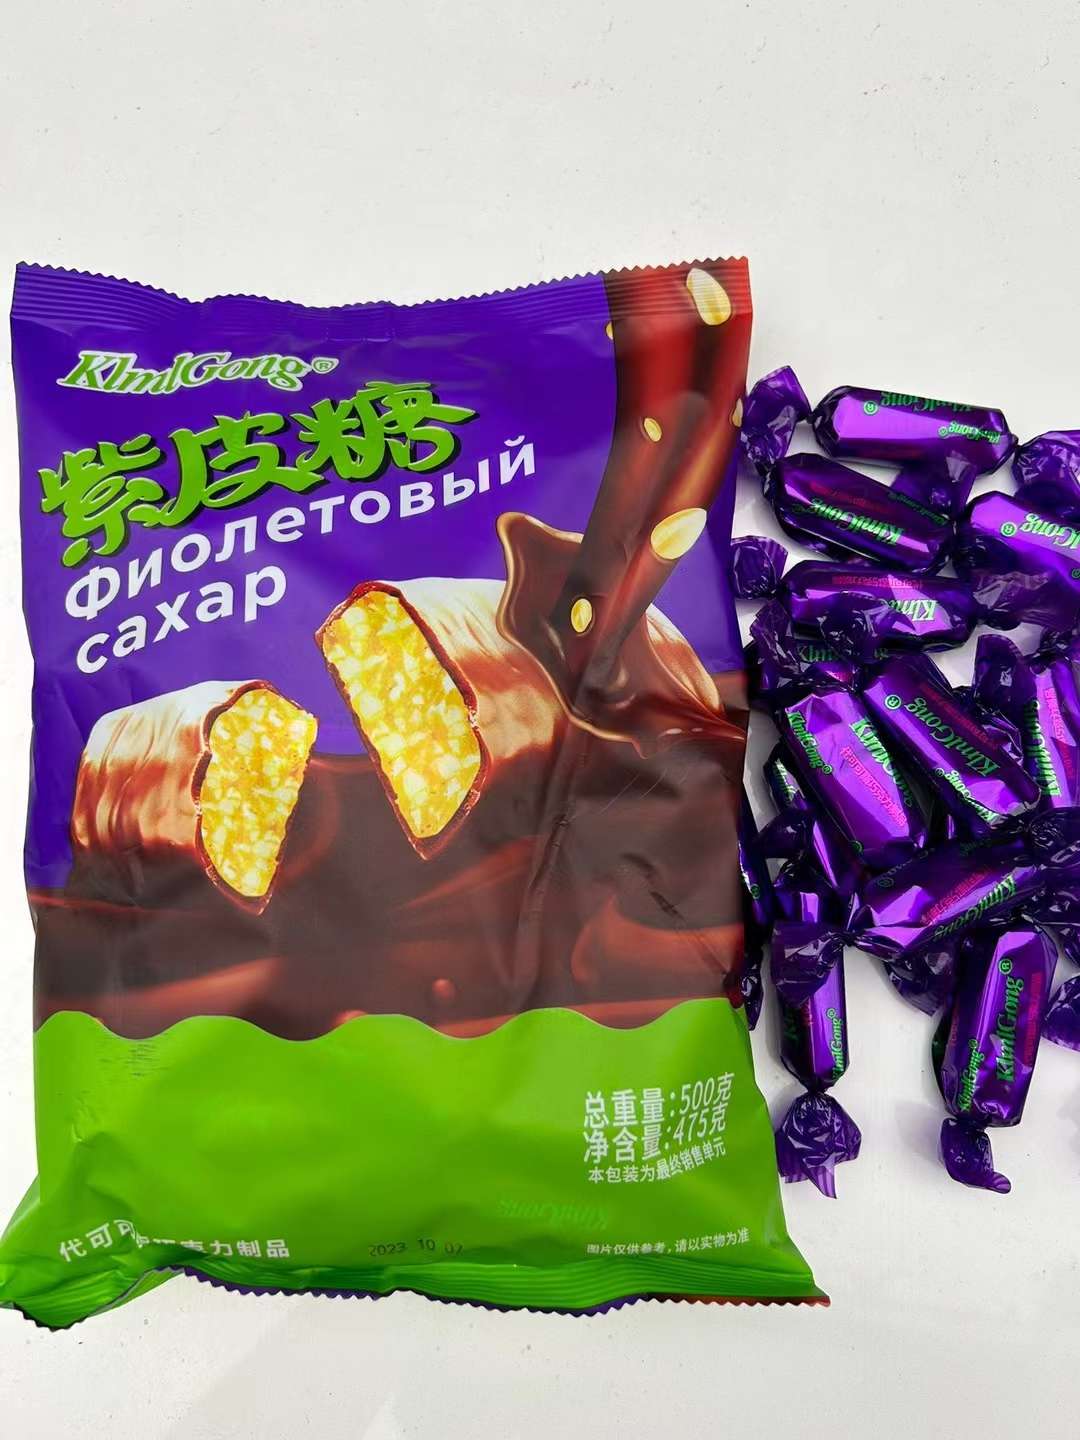 俄罗斯风味紫皮糖，网红口味，厂家直销，超值批发价8.5元/500g，一箱20包，紫皮糖。详情图8